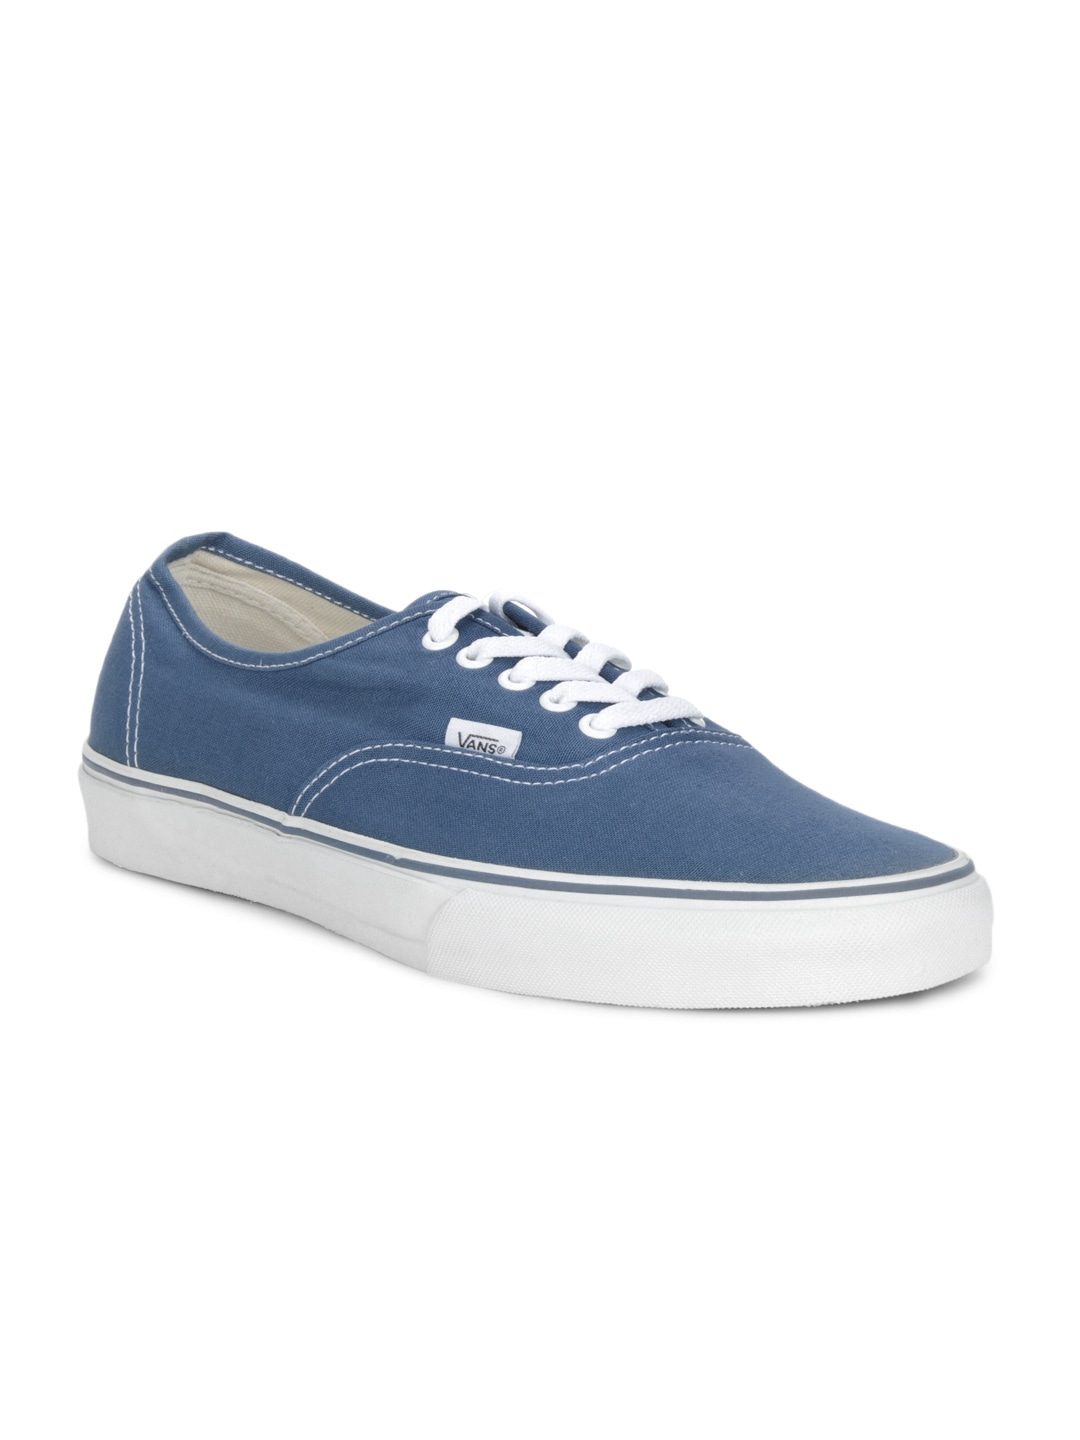 Vans Unisex Blue Authentic Shoes